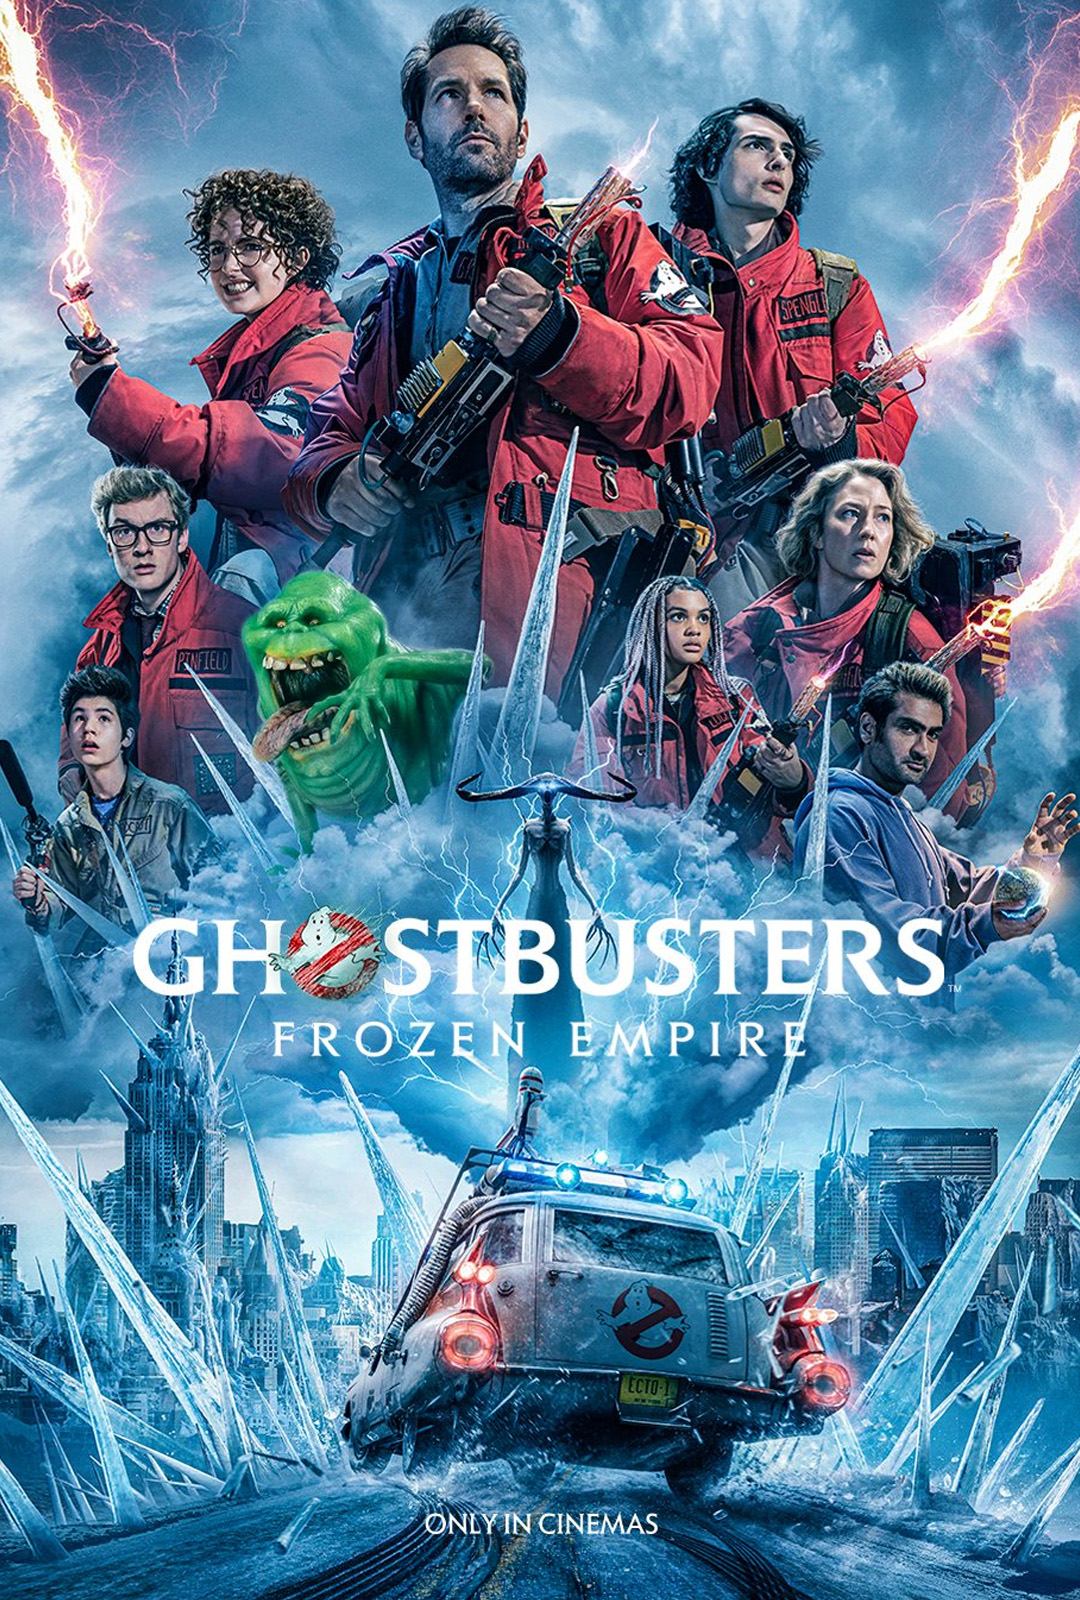 Movie Poster: Ghostbusters: Apocalipsis fantasma